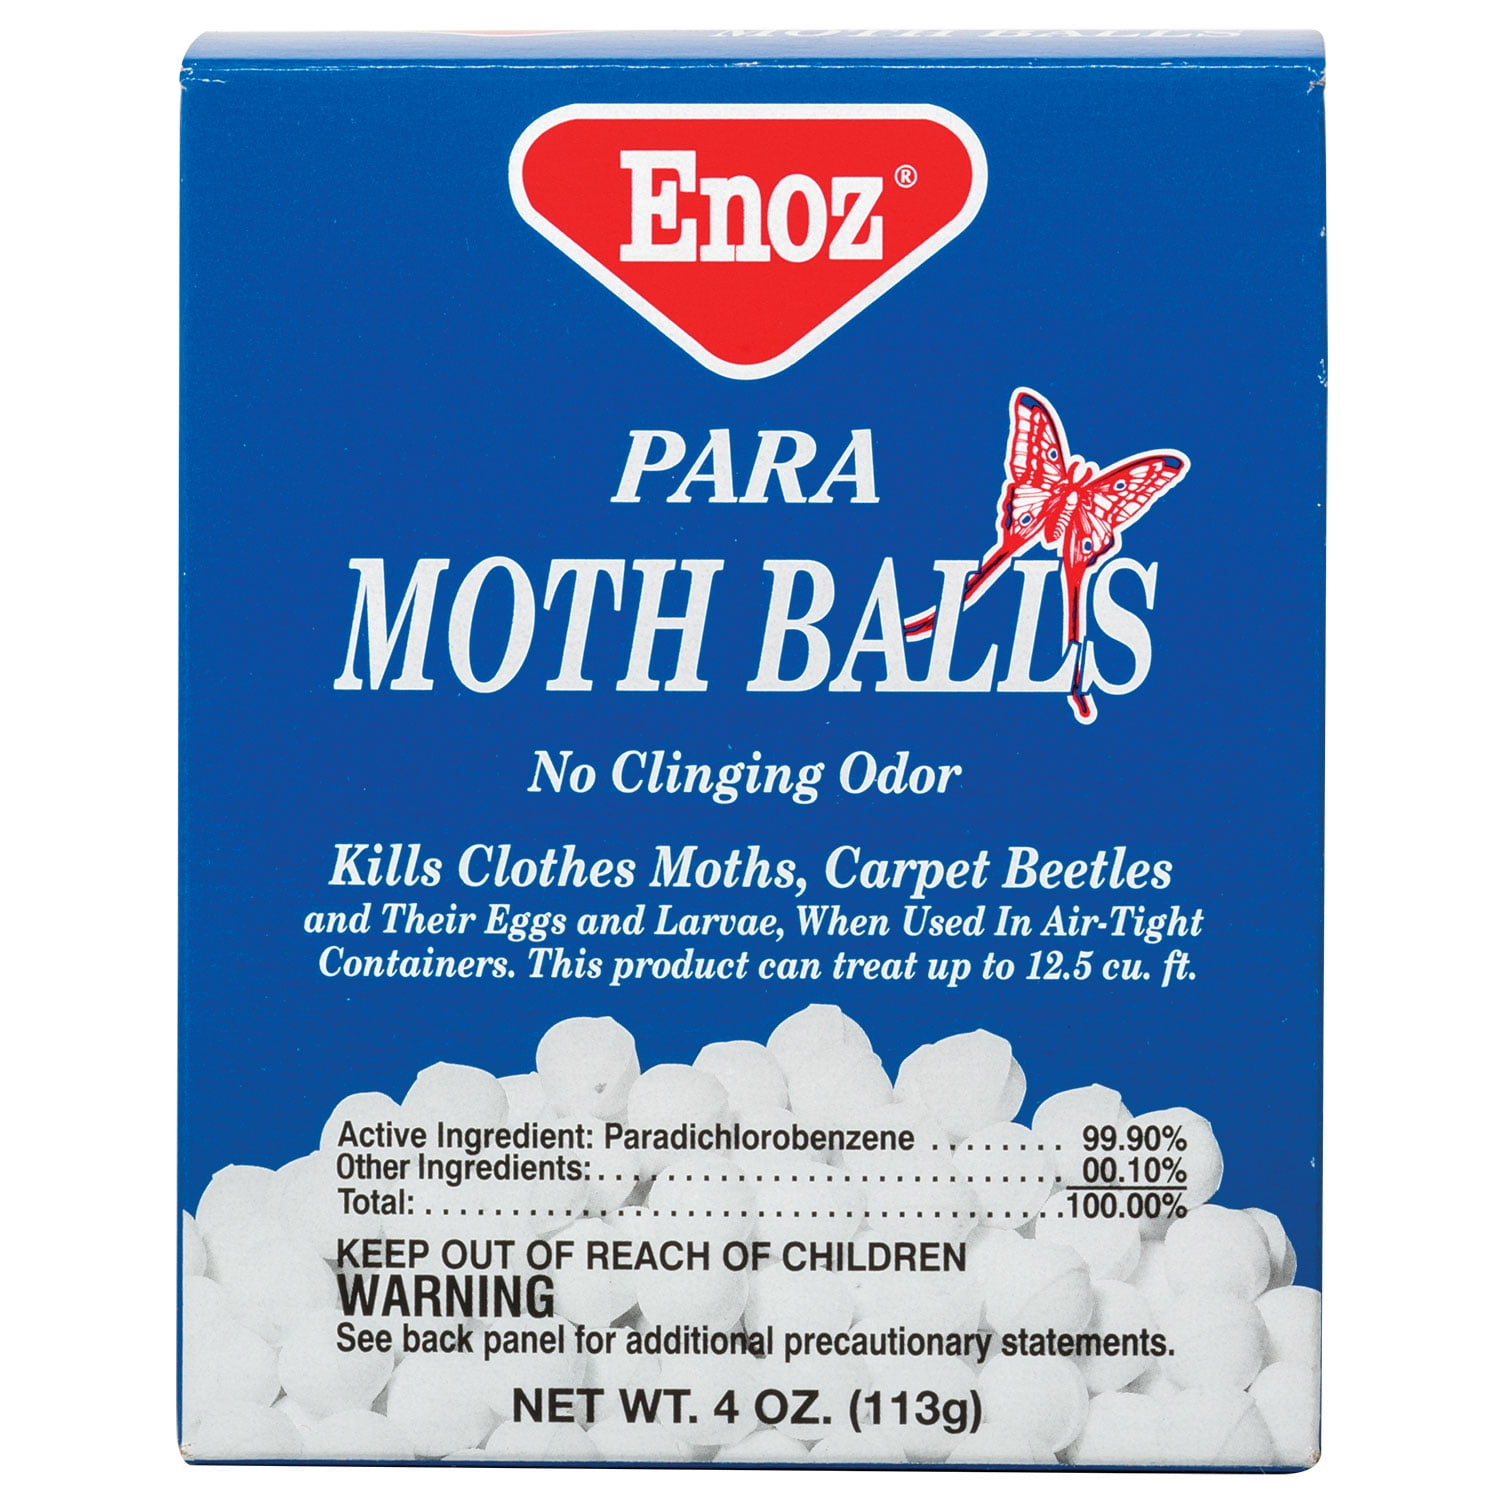 10 Pack Moth Balls No Clinging Odor, Kills Clothes Moths, Carpet Beetles,  Repellent Closet Clothes Protector - AliExpress